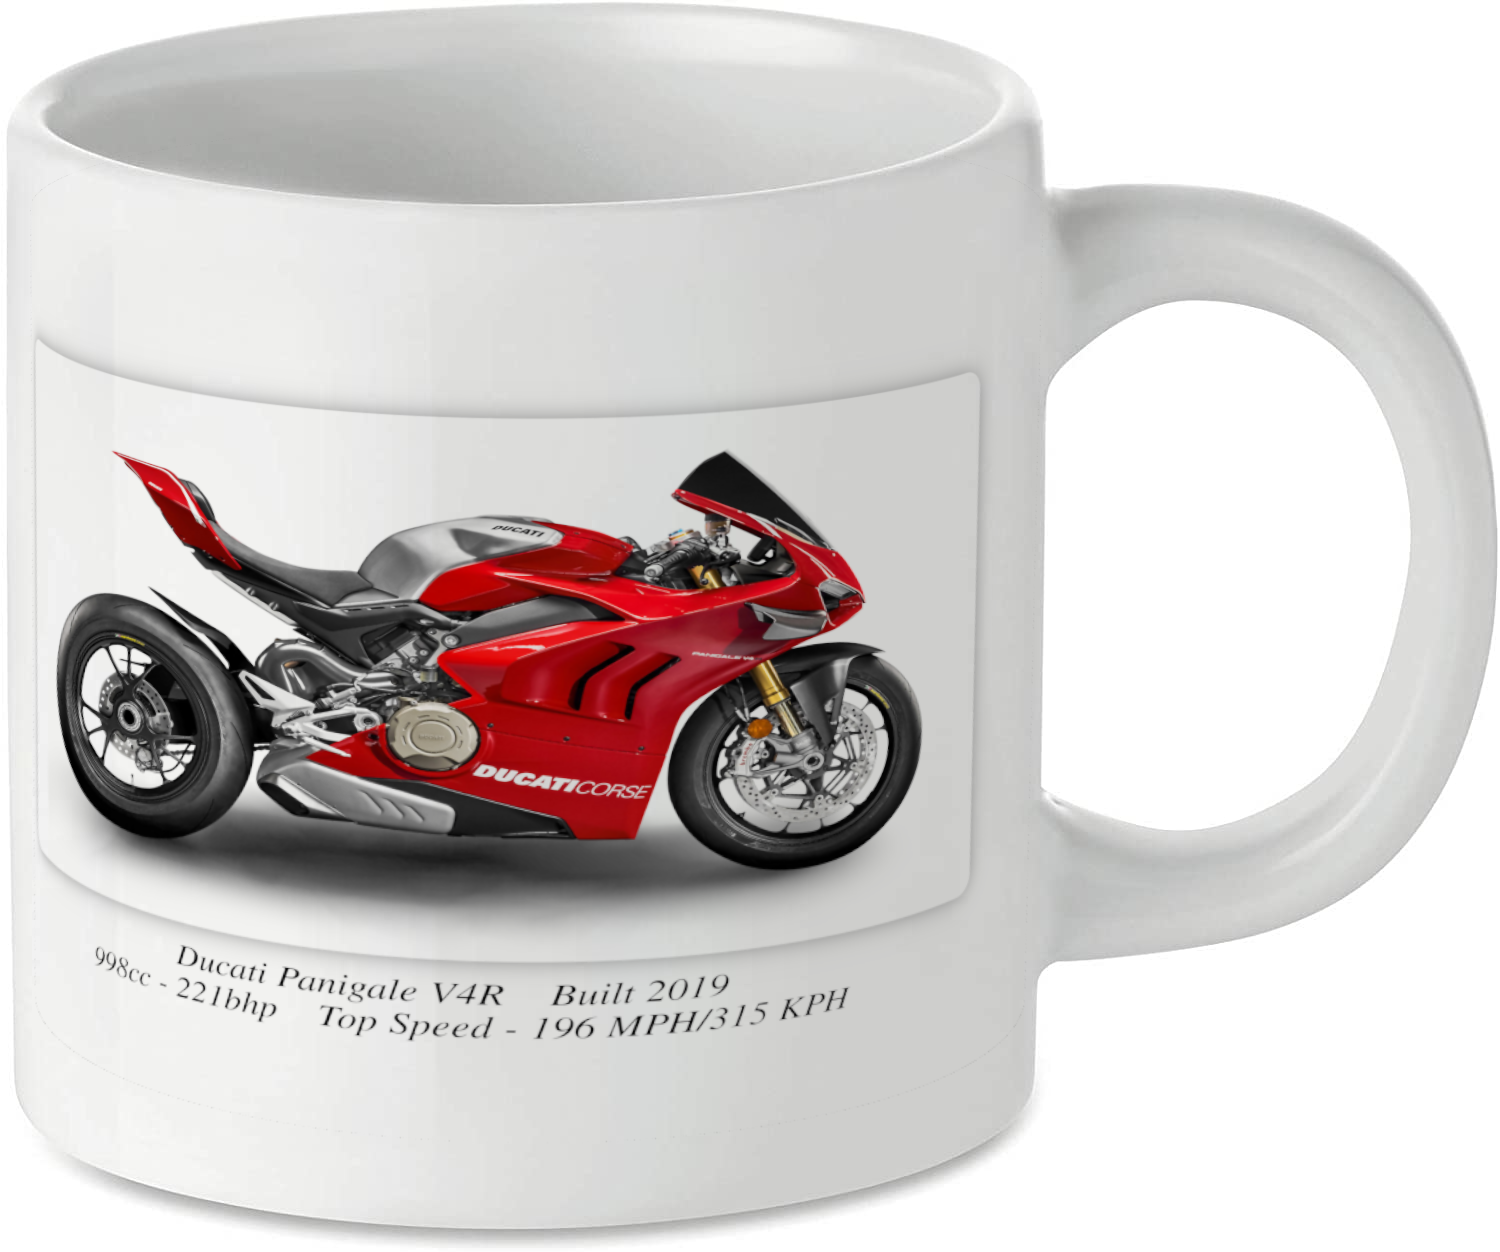 Ducati Panigale V4R Motorbike Motorcycle Tea Coffee Mug Ideal Biker Gift Printed UK